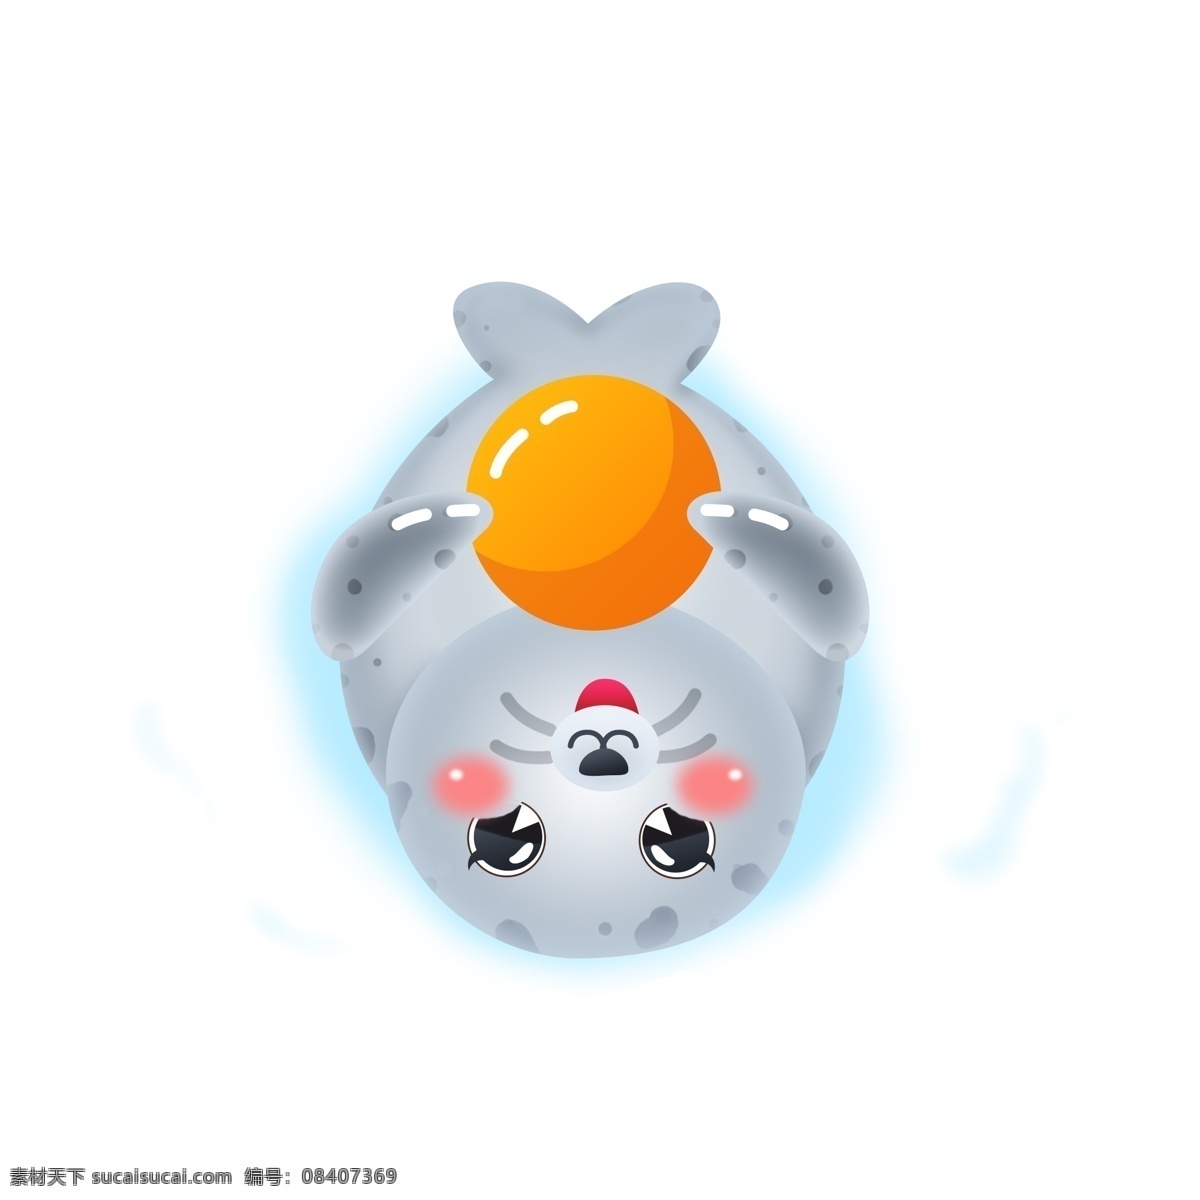 雪地 国际 海豹 节 卡通 矢量 可爱 动物 公益 皮球 爱护动物 3月1日